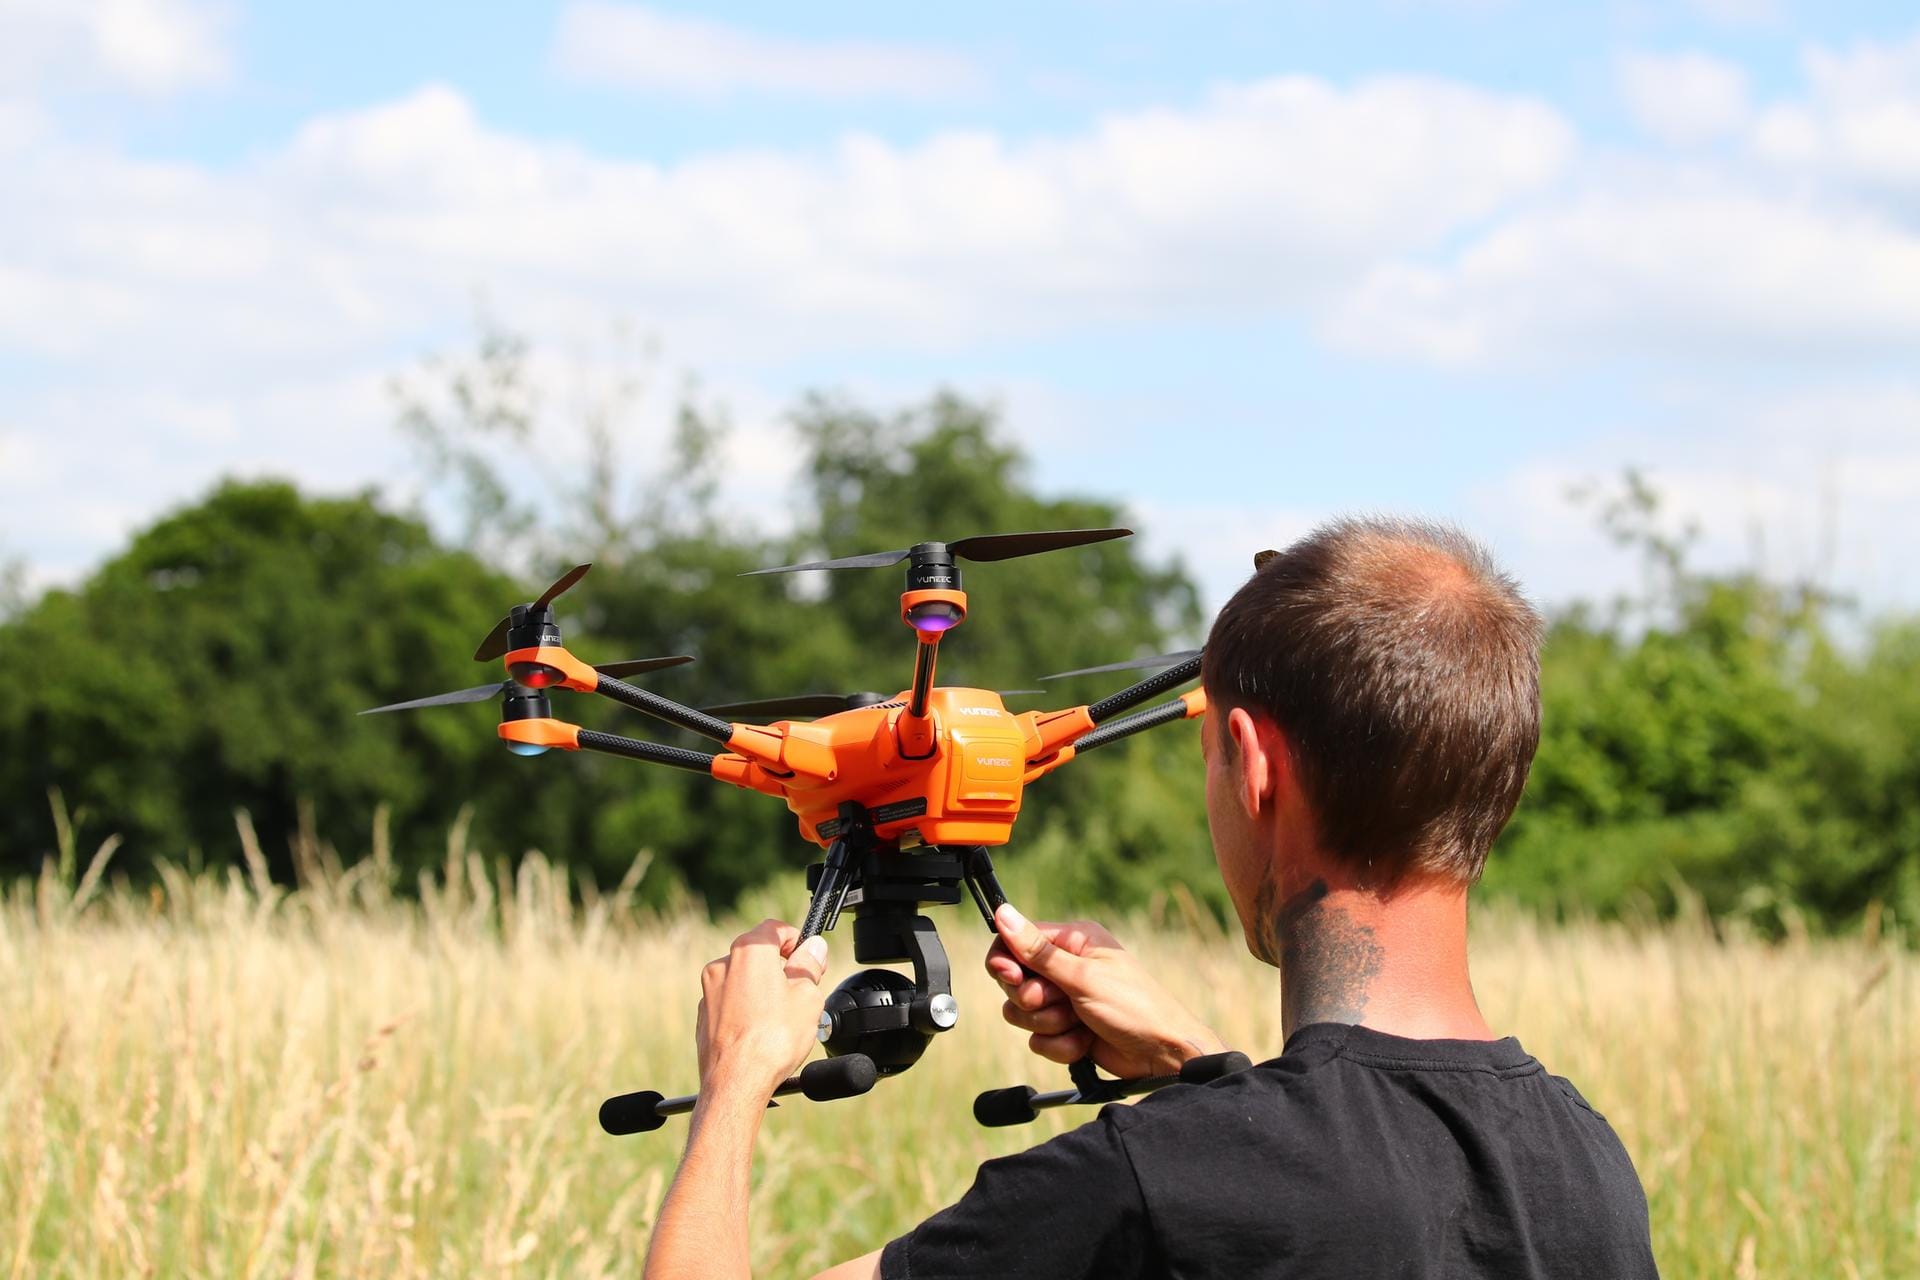 Tierschützer wie Andreas Nowack wollen mit Drohnen Rehkitze auf Feldern aufspüren.